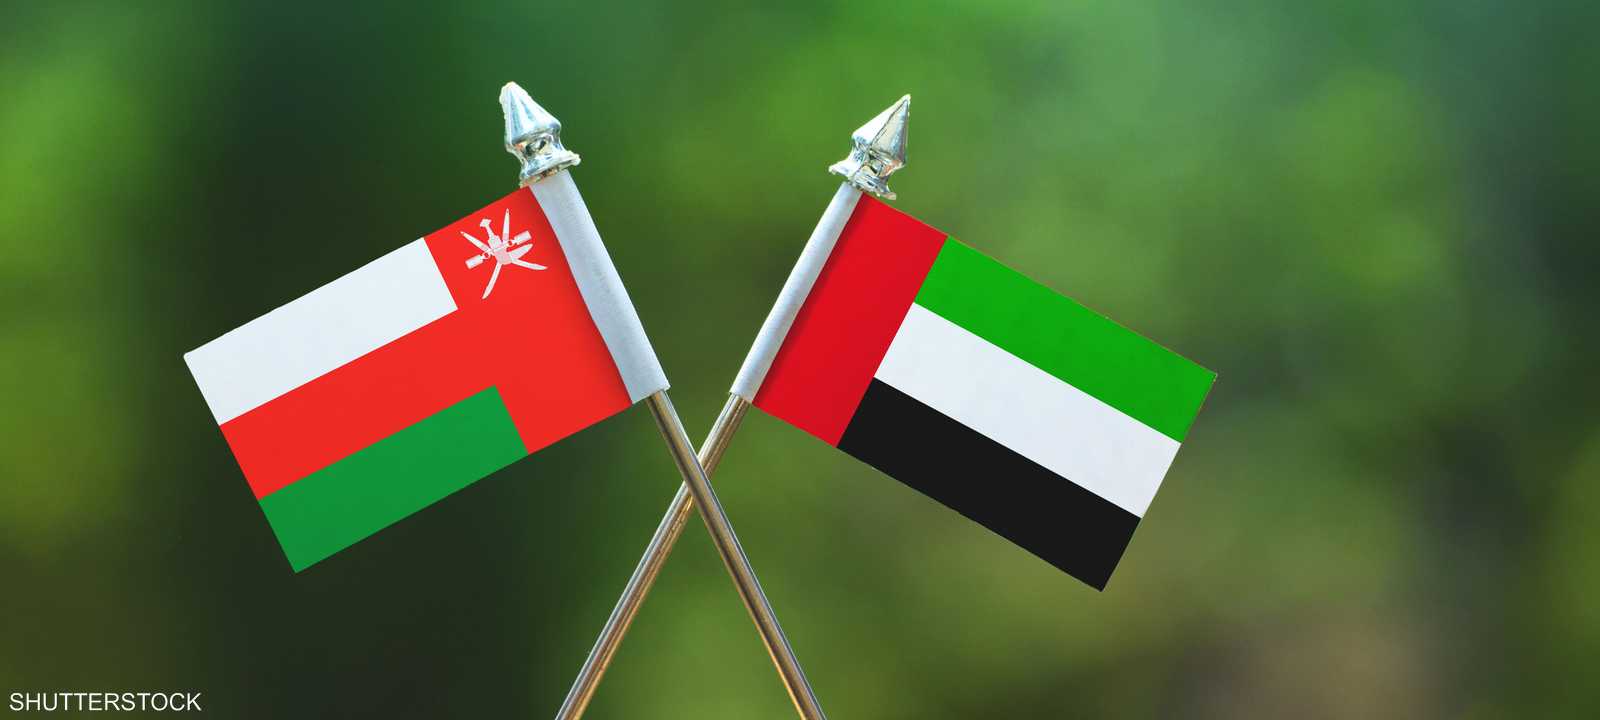 الإمارات وسلطنة عُمان شراكة تُرسي أسسًا لمستقبل مشرق